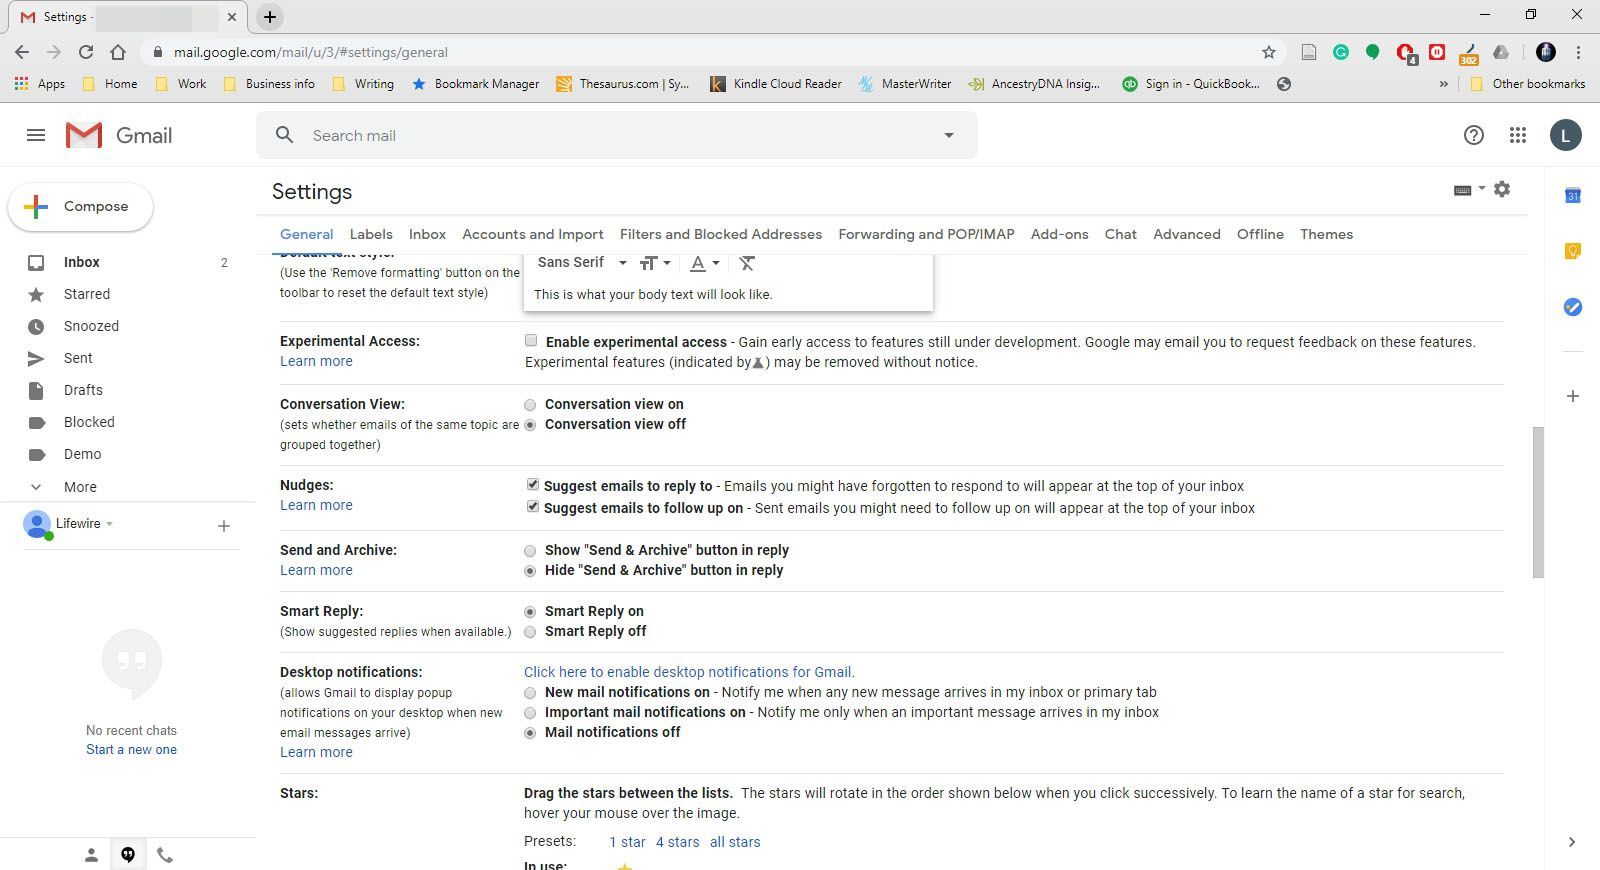 Скриншот дополнительных настроек в Gmail.